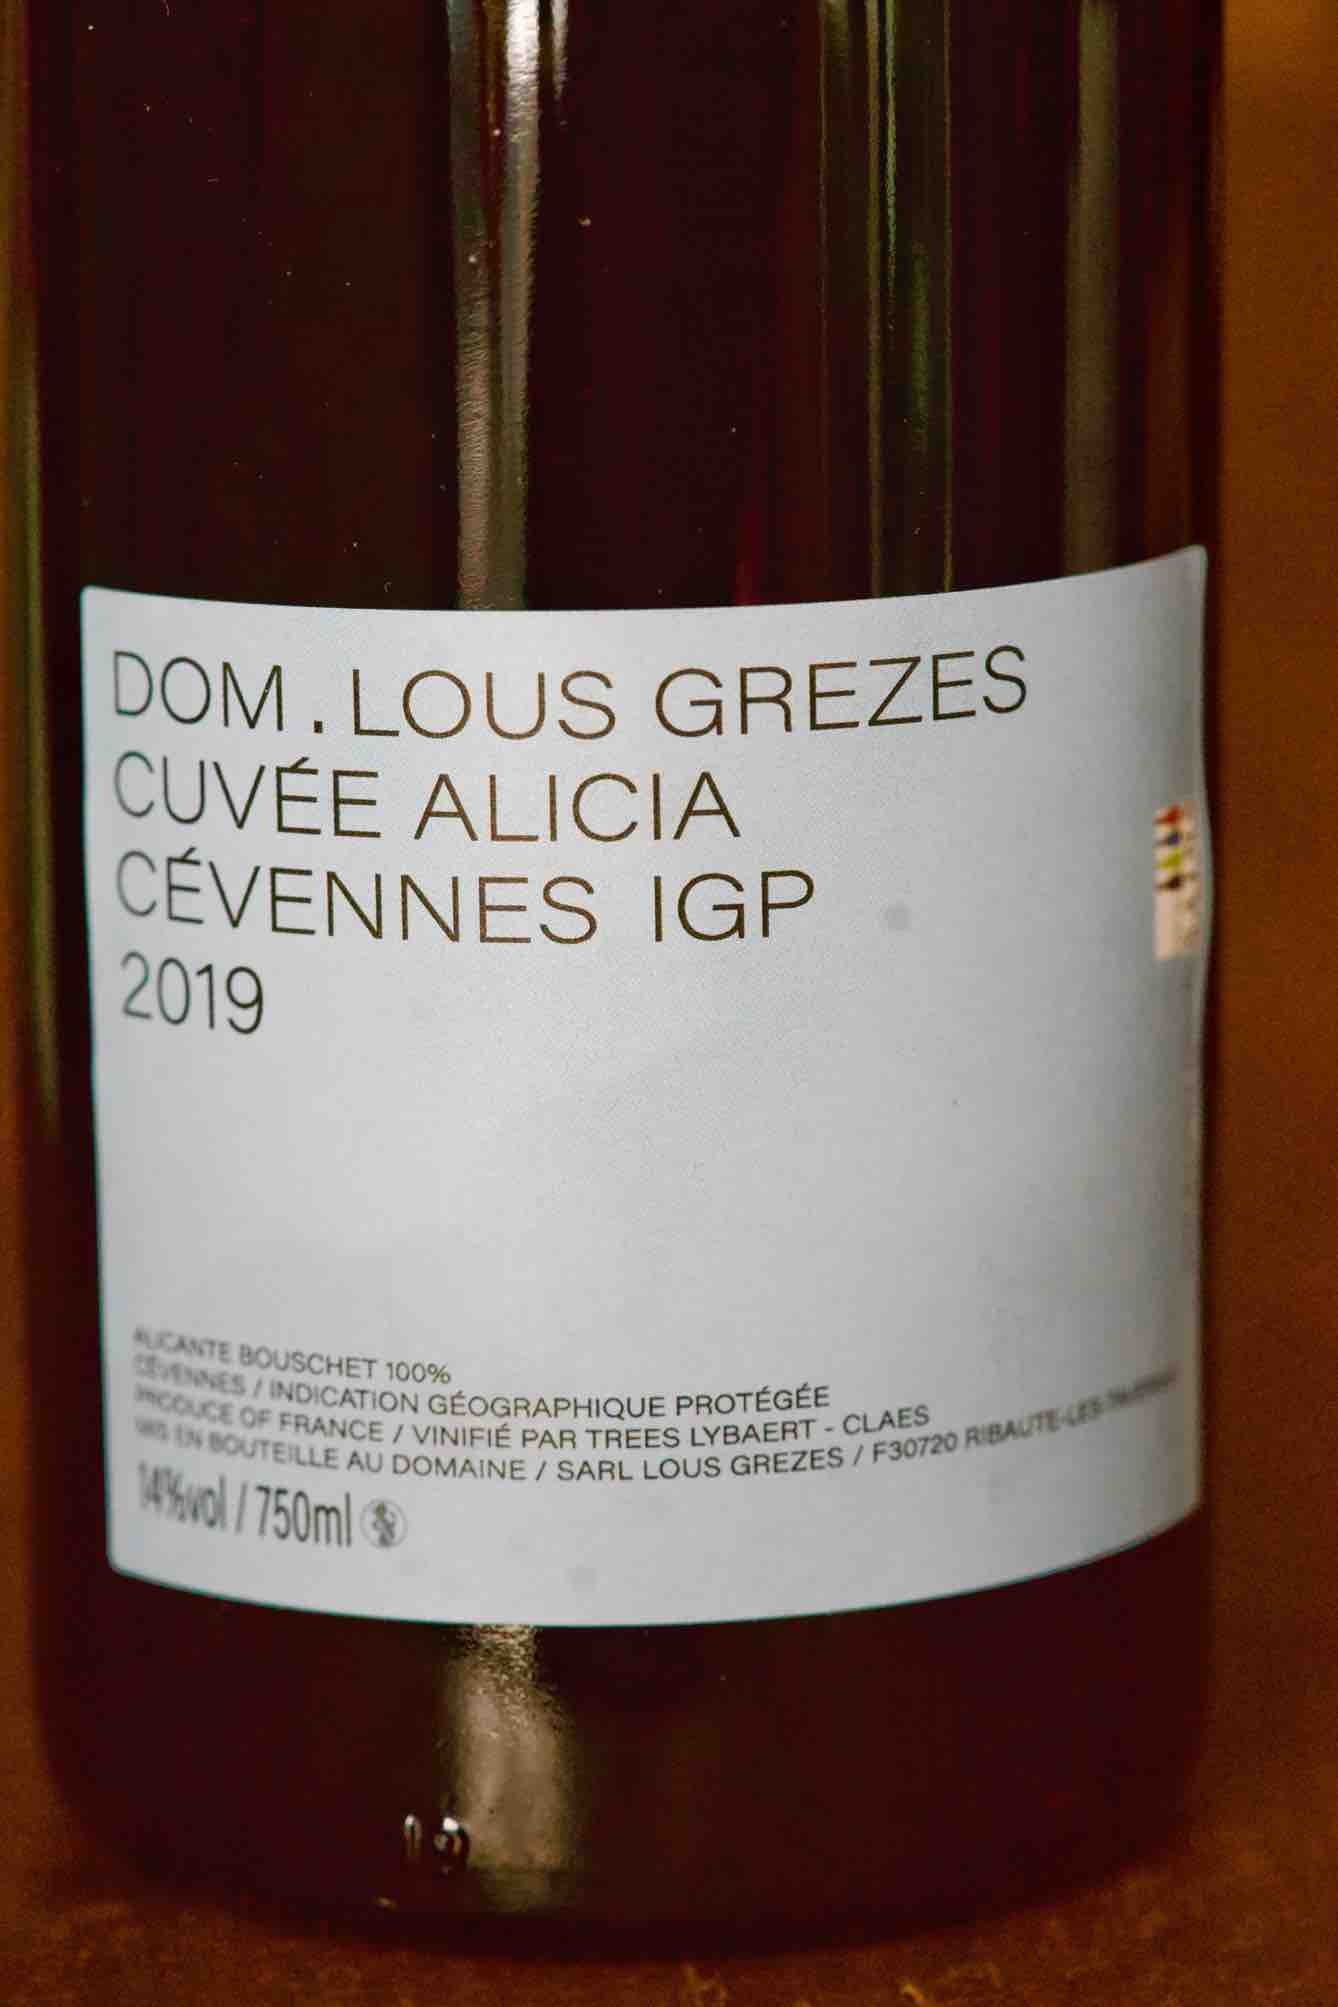 Cevennes IGP Alicante Bouschet "Cuvee Alicia", Domaine Lous Grezes 2019